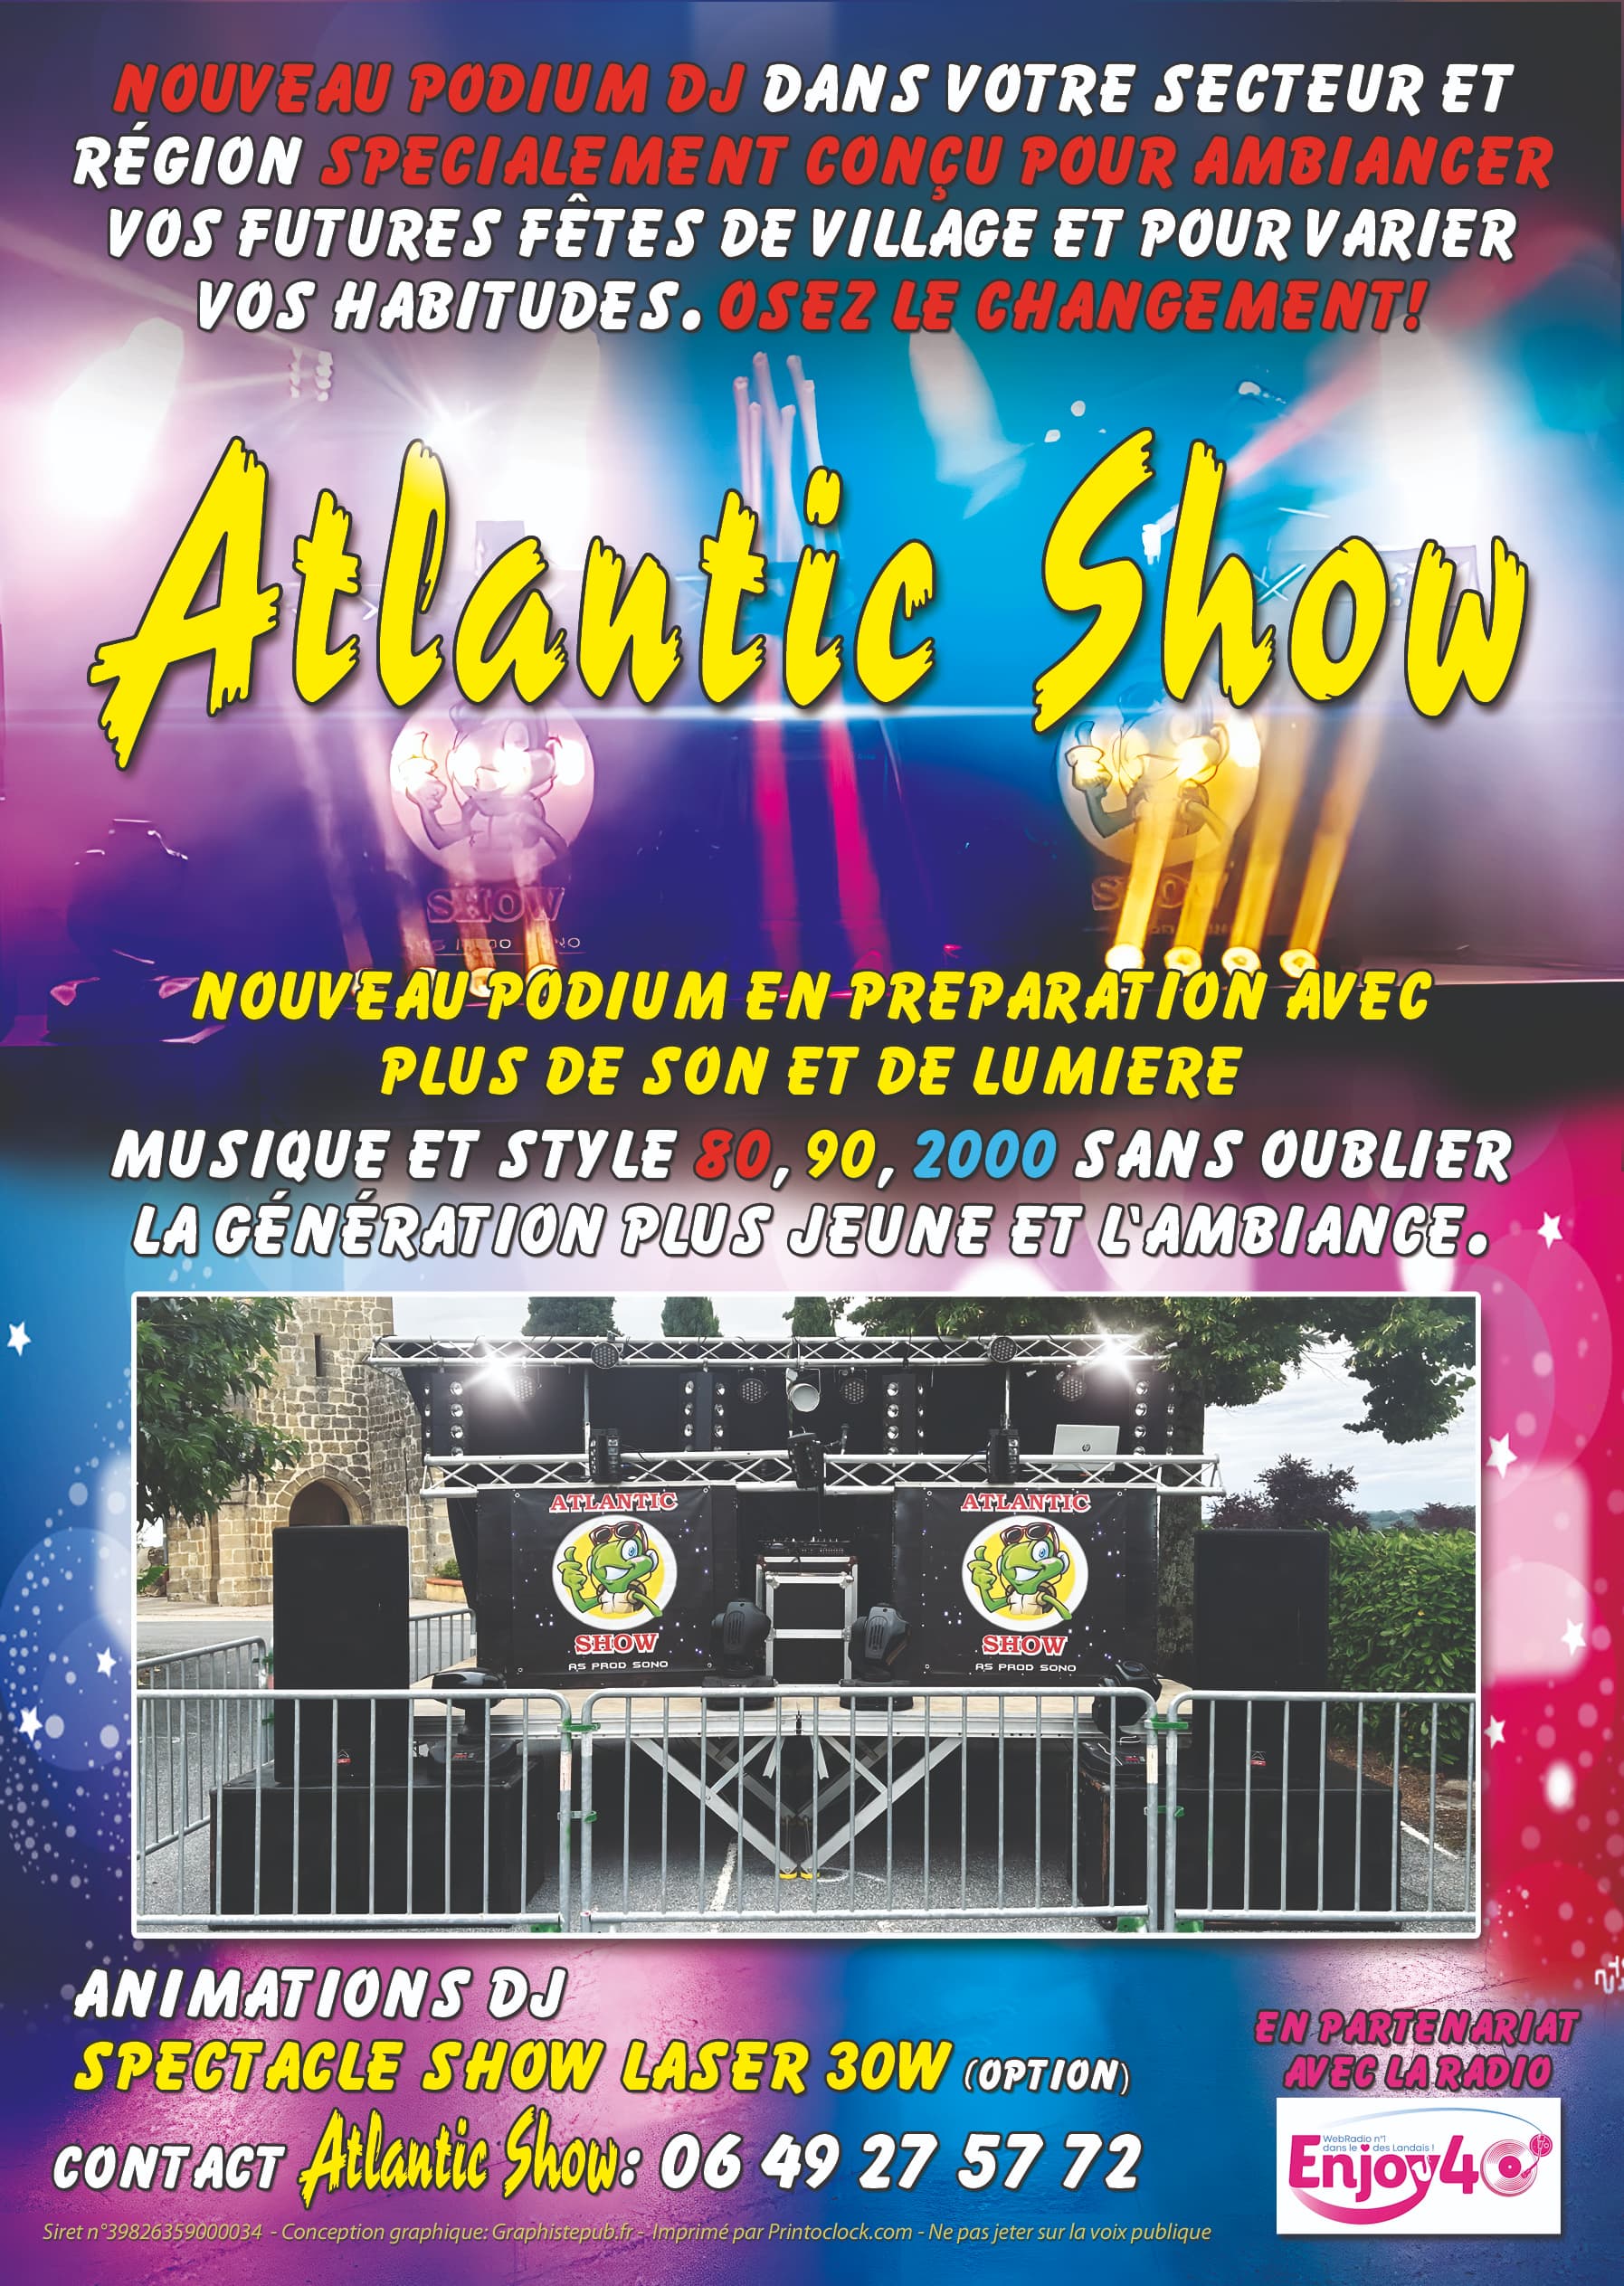 La disco mobile Atlantic Show présente sa nouvelle structure avec plus de son et de lumière. Se déplaçant dans la  région Nouvelle-Aquitaine autour du département des Landes, Atlantic show apporte toute son expérience pour une soirée réussie.